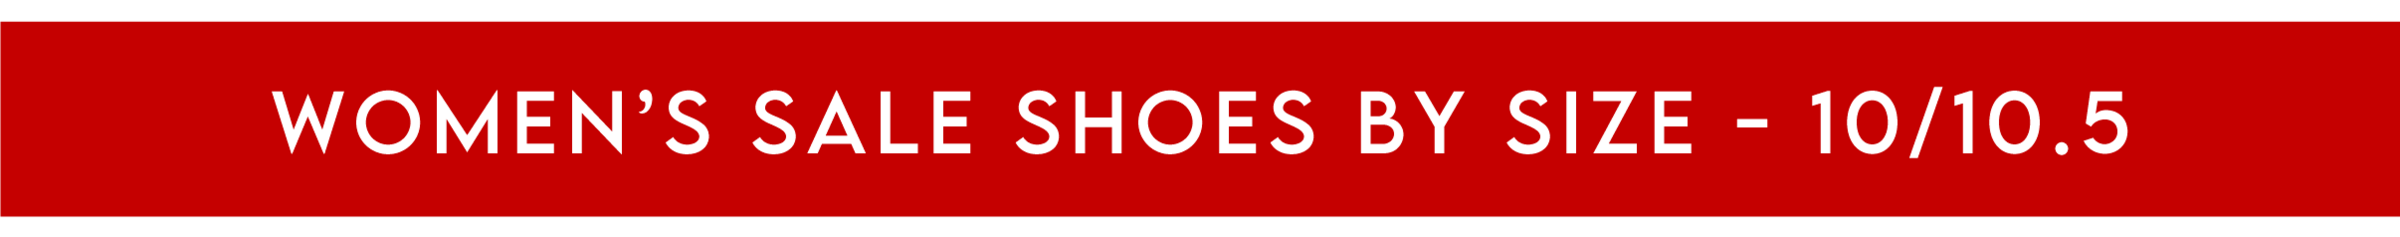 Women's Sale Shoes - Size 10/10.5